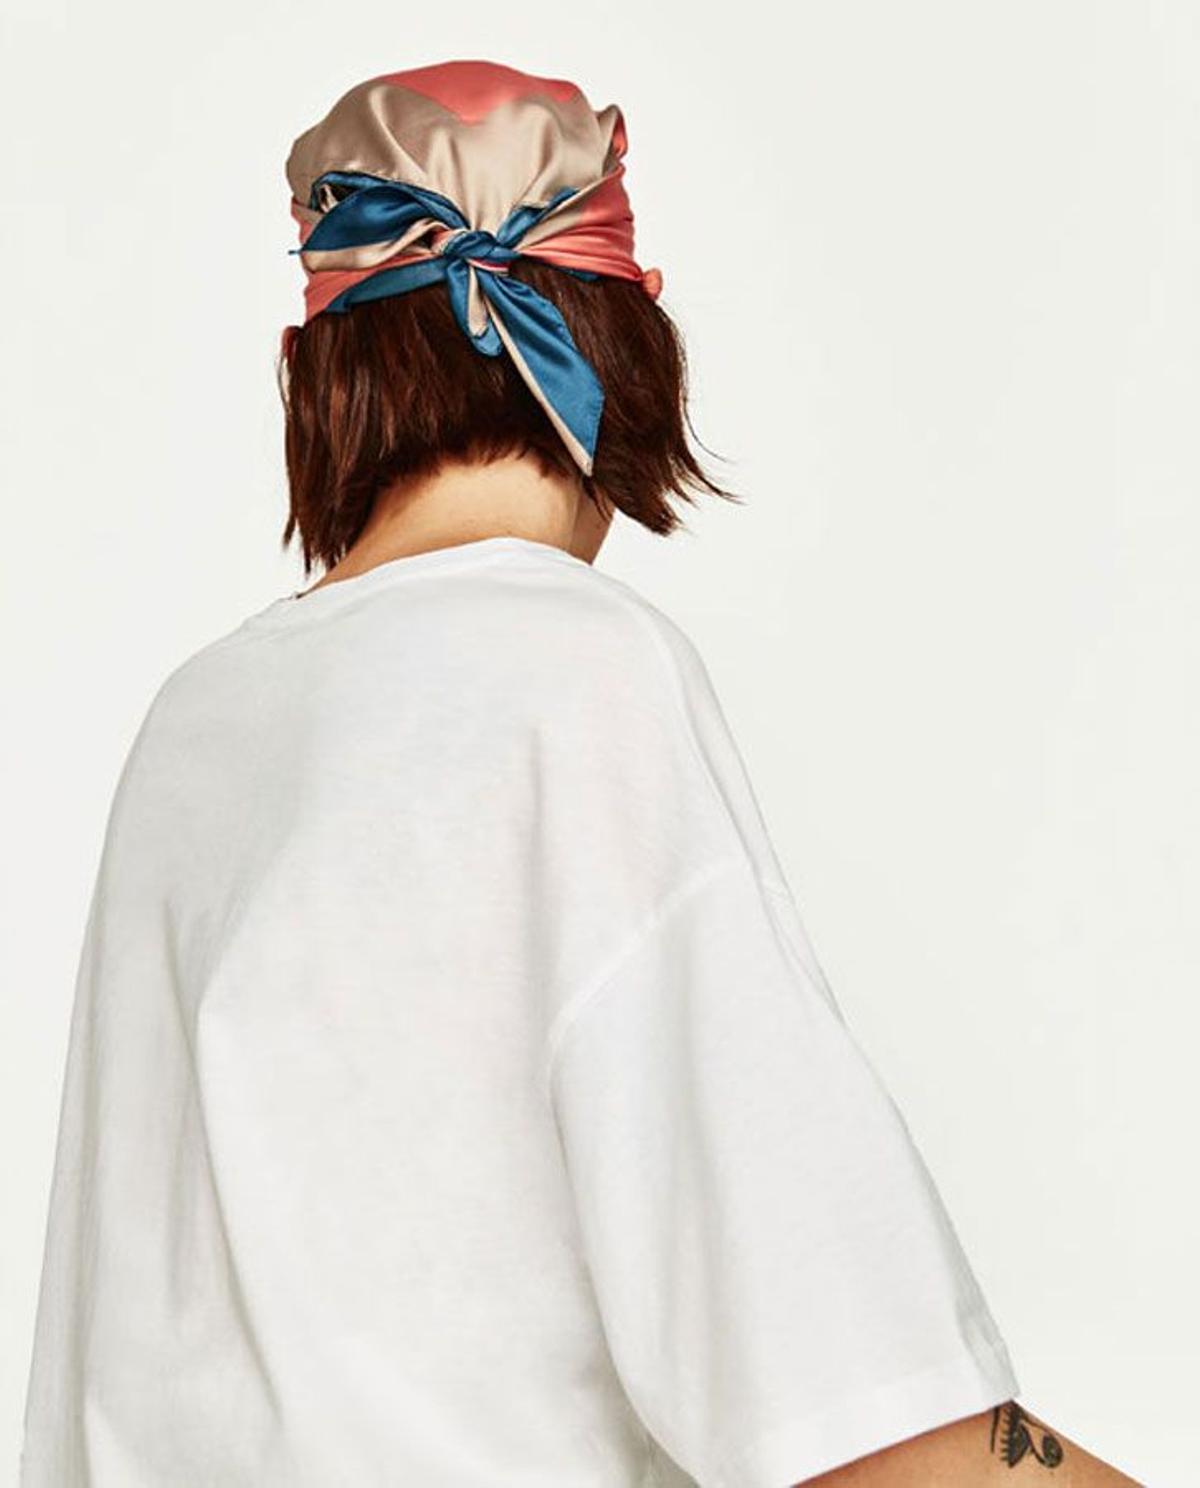 Peinados de verano con accesorios: Pañuelo de Zara